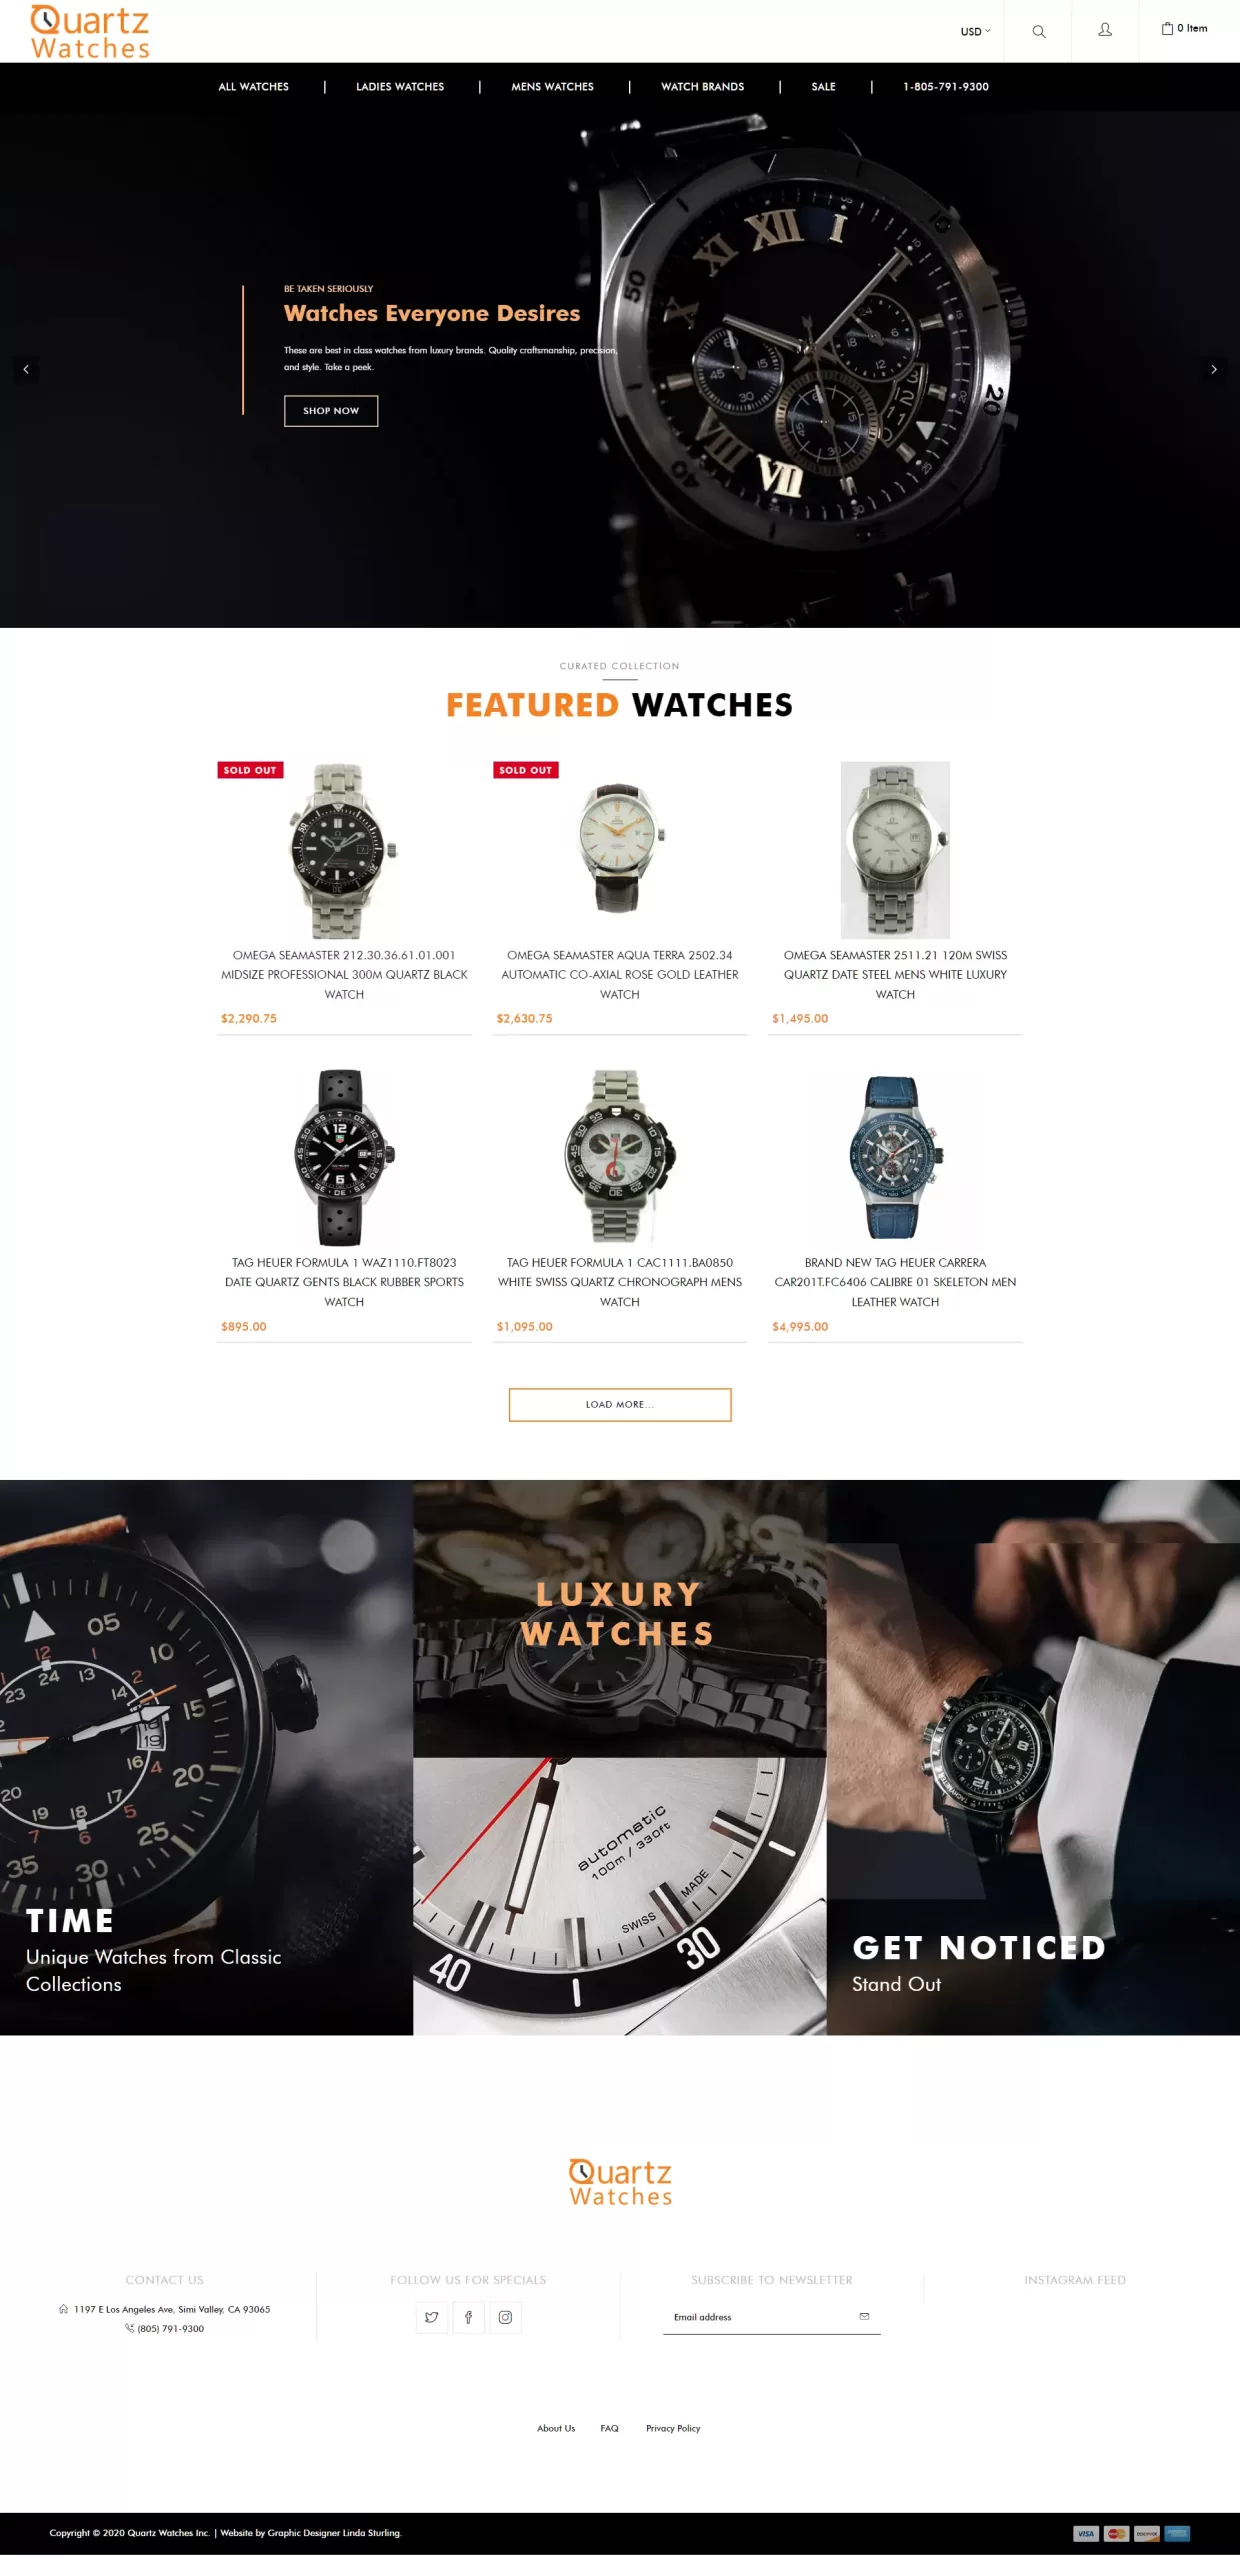 Quartz Watches Ecommerce Web Design Home Page